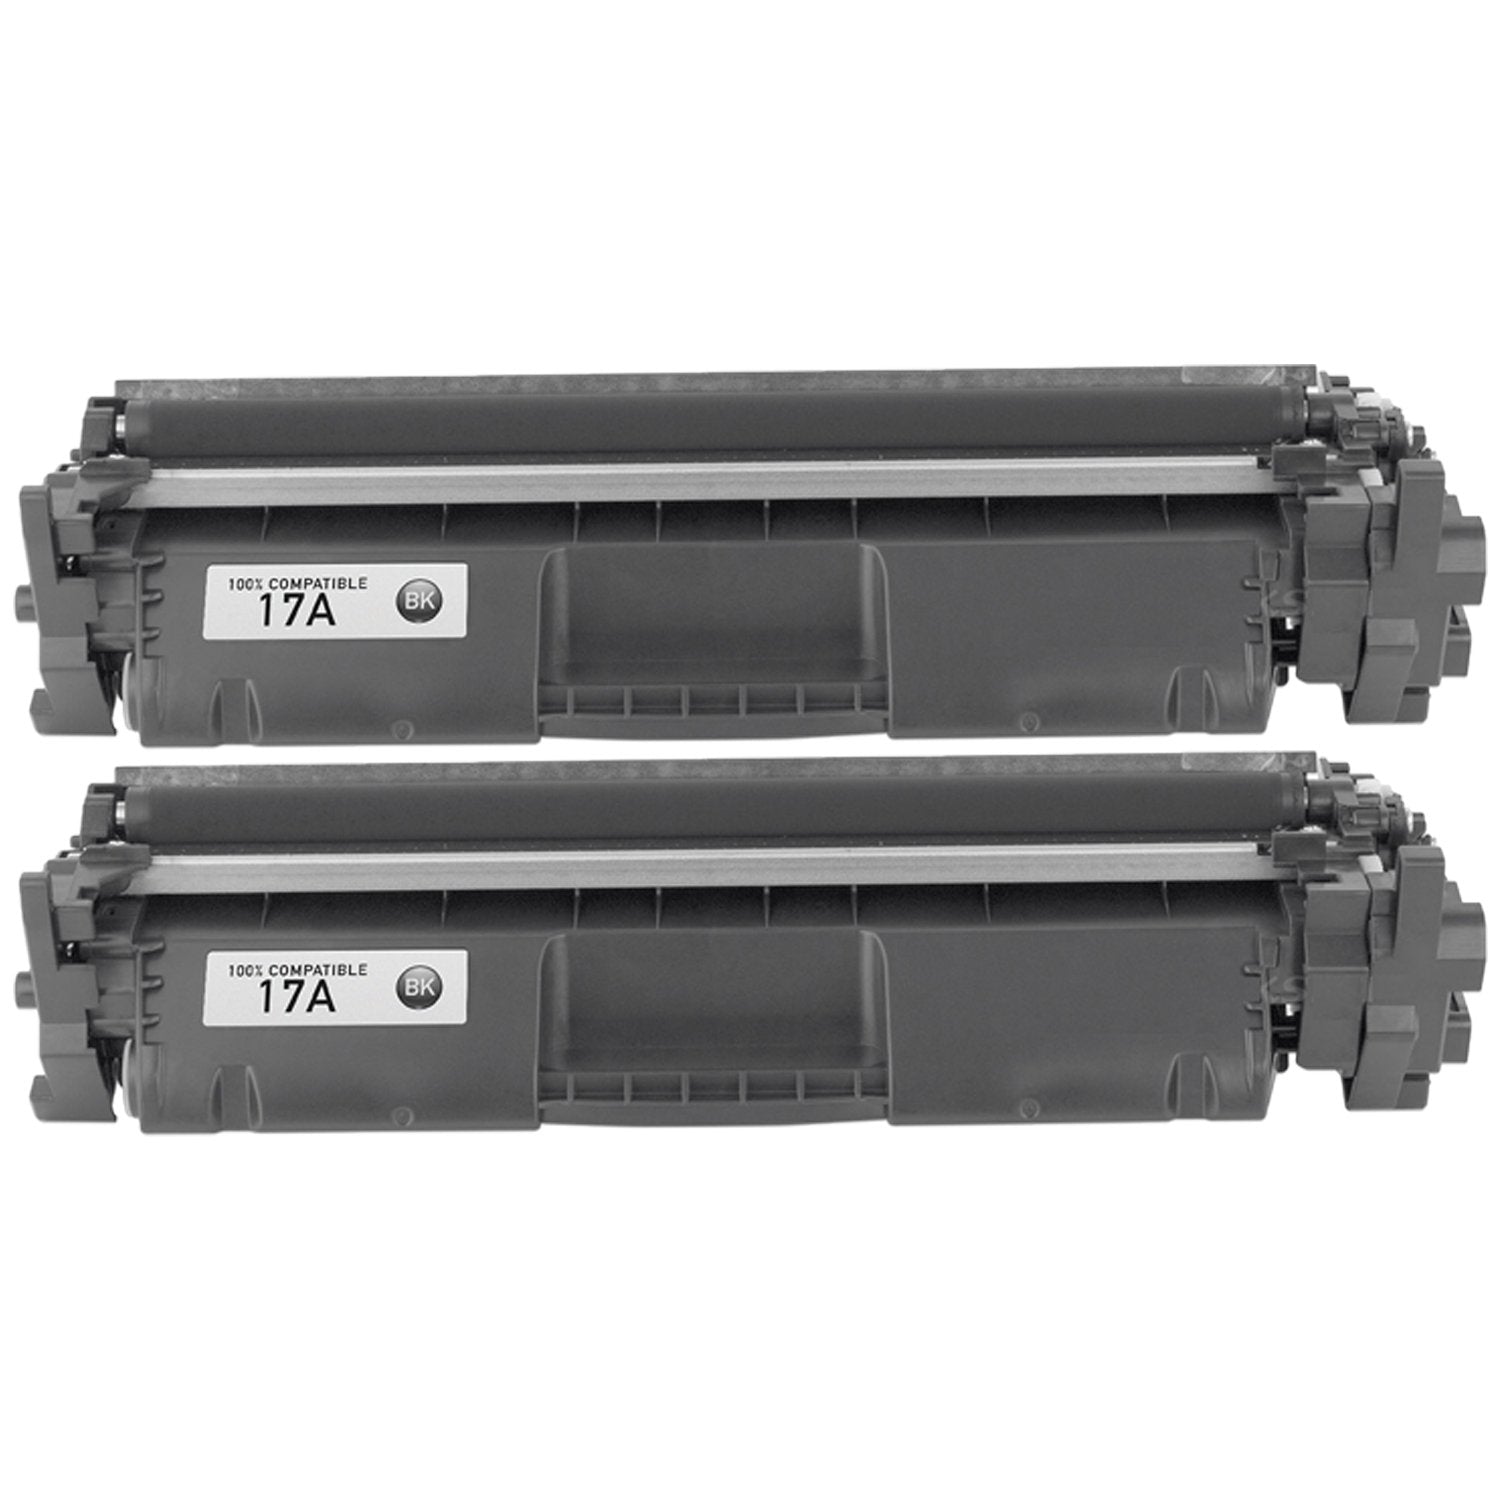 Absolute Toner Compatible CF217A HP 17A Black Toner Cartridge | Absolute Toner HP Toner Cartridges